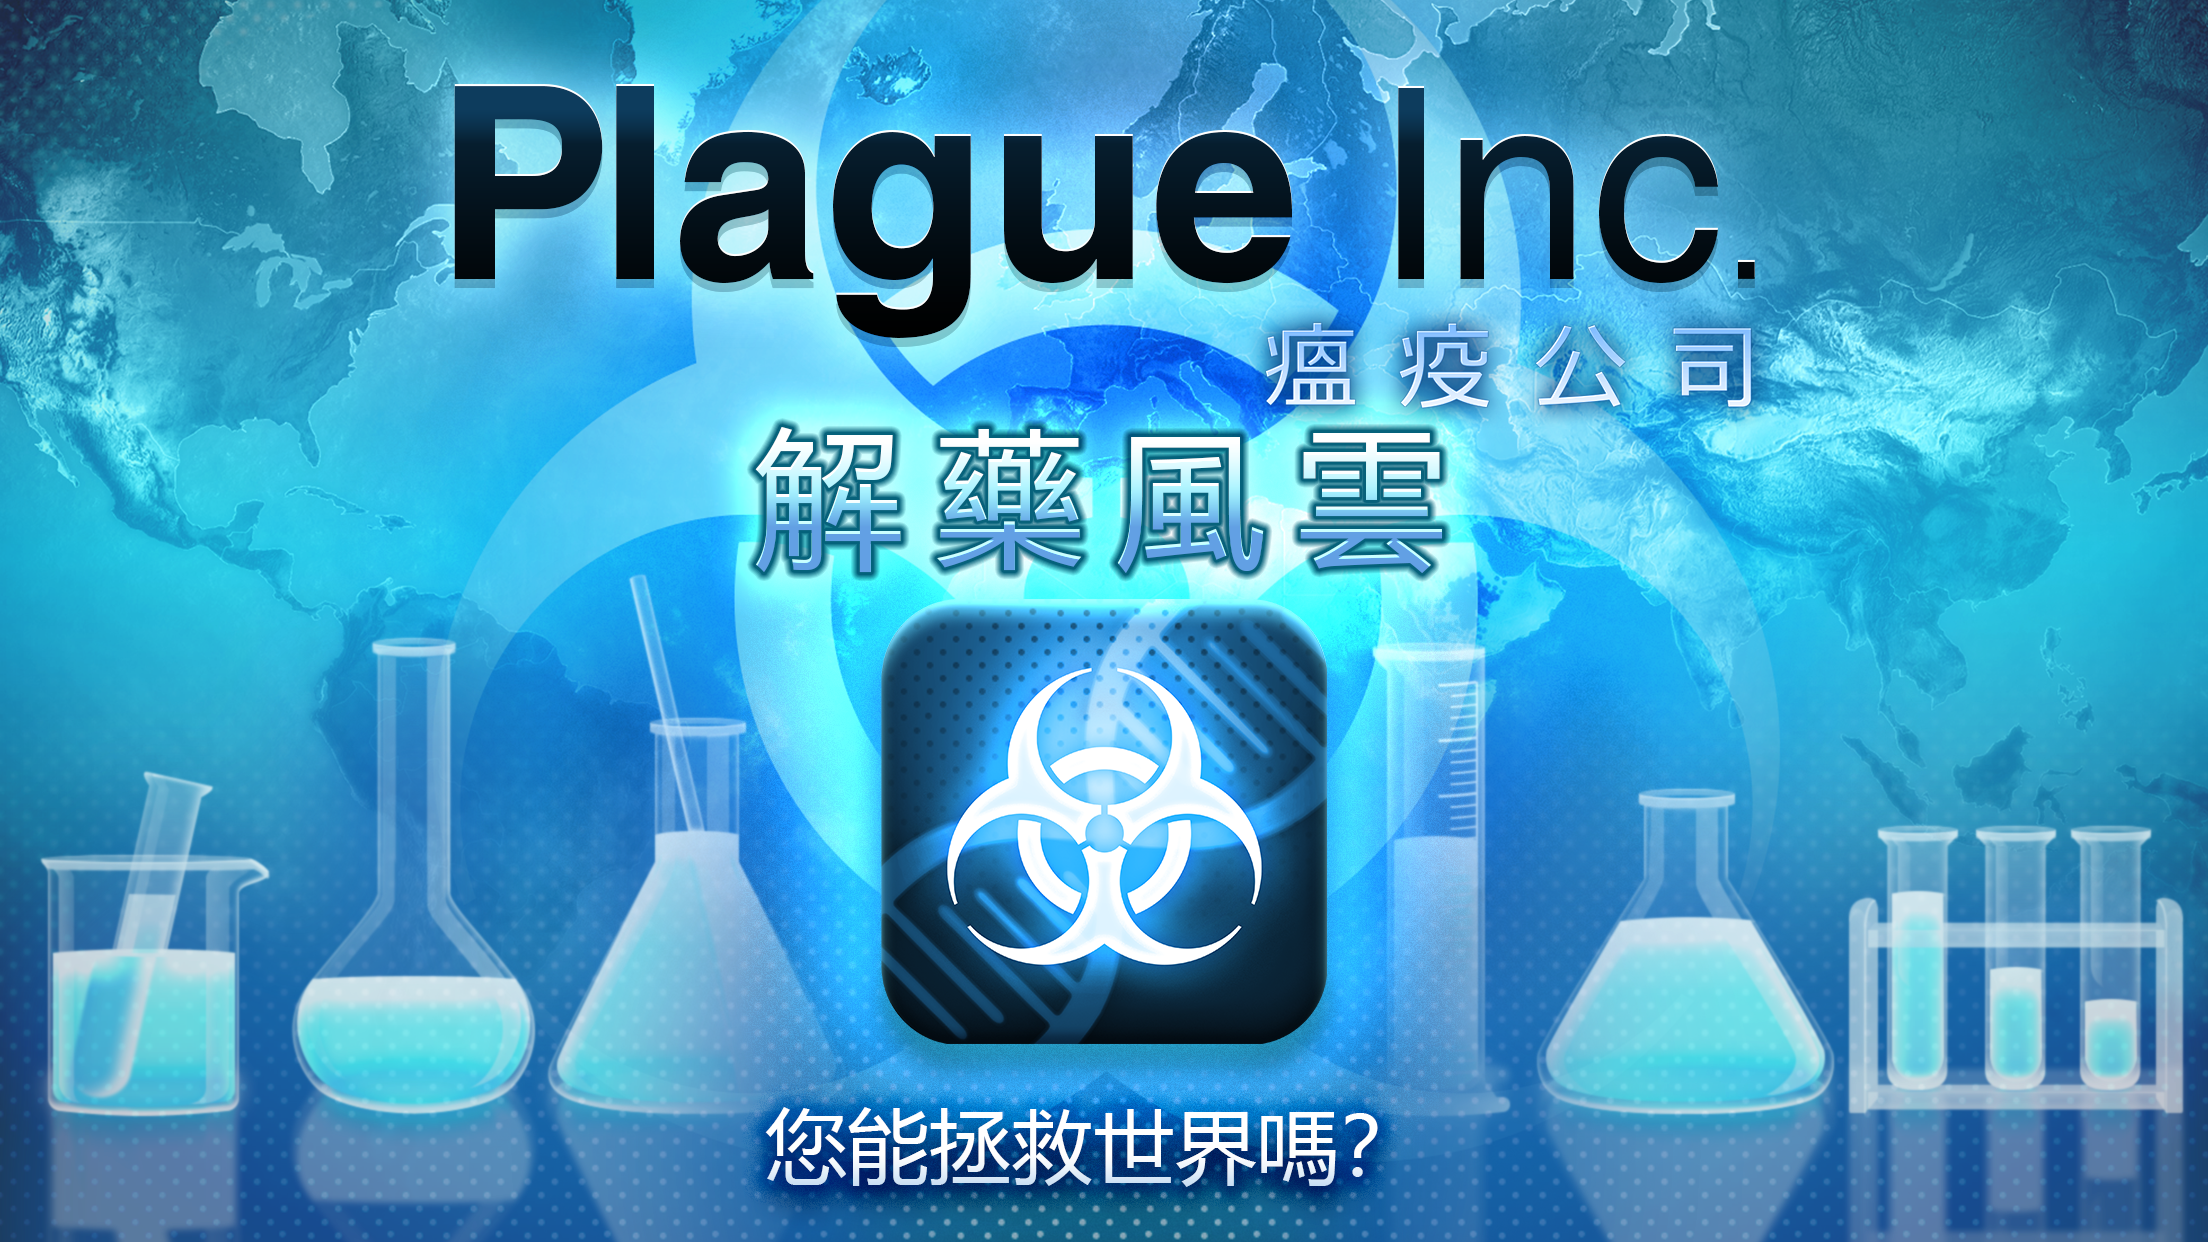 Screenshot 1 of Plague Inc. (瘟疫公司) 1.19.17